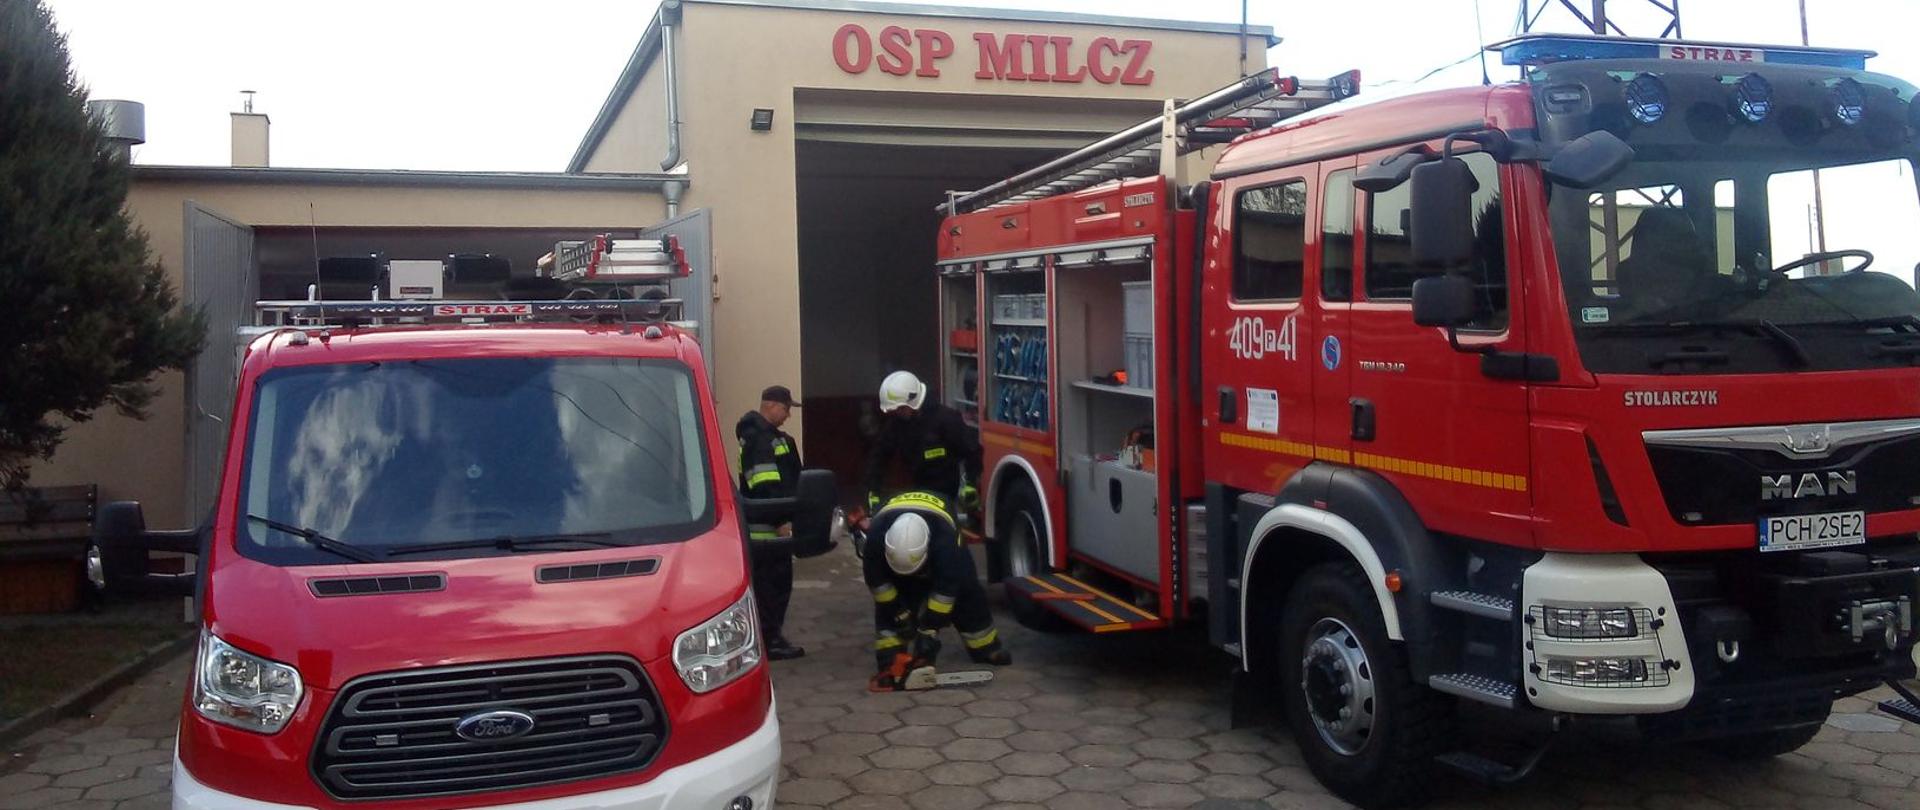 Zdjęcie przedstawia strażaków sprawdzających sprzęt strażacki podczas jesiennych przeglądów technicznych oraz samochody gaśnicze.
W tle budynek remizy OSP.
